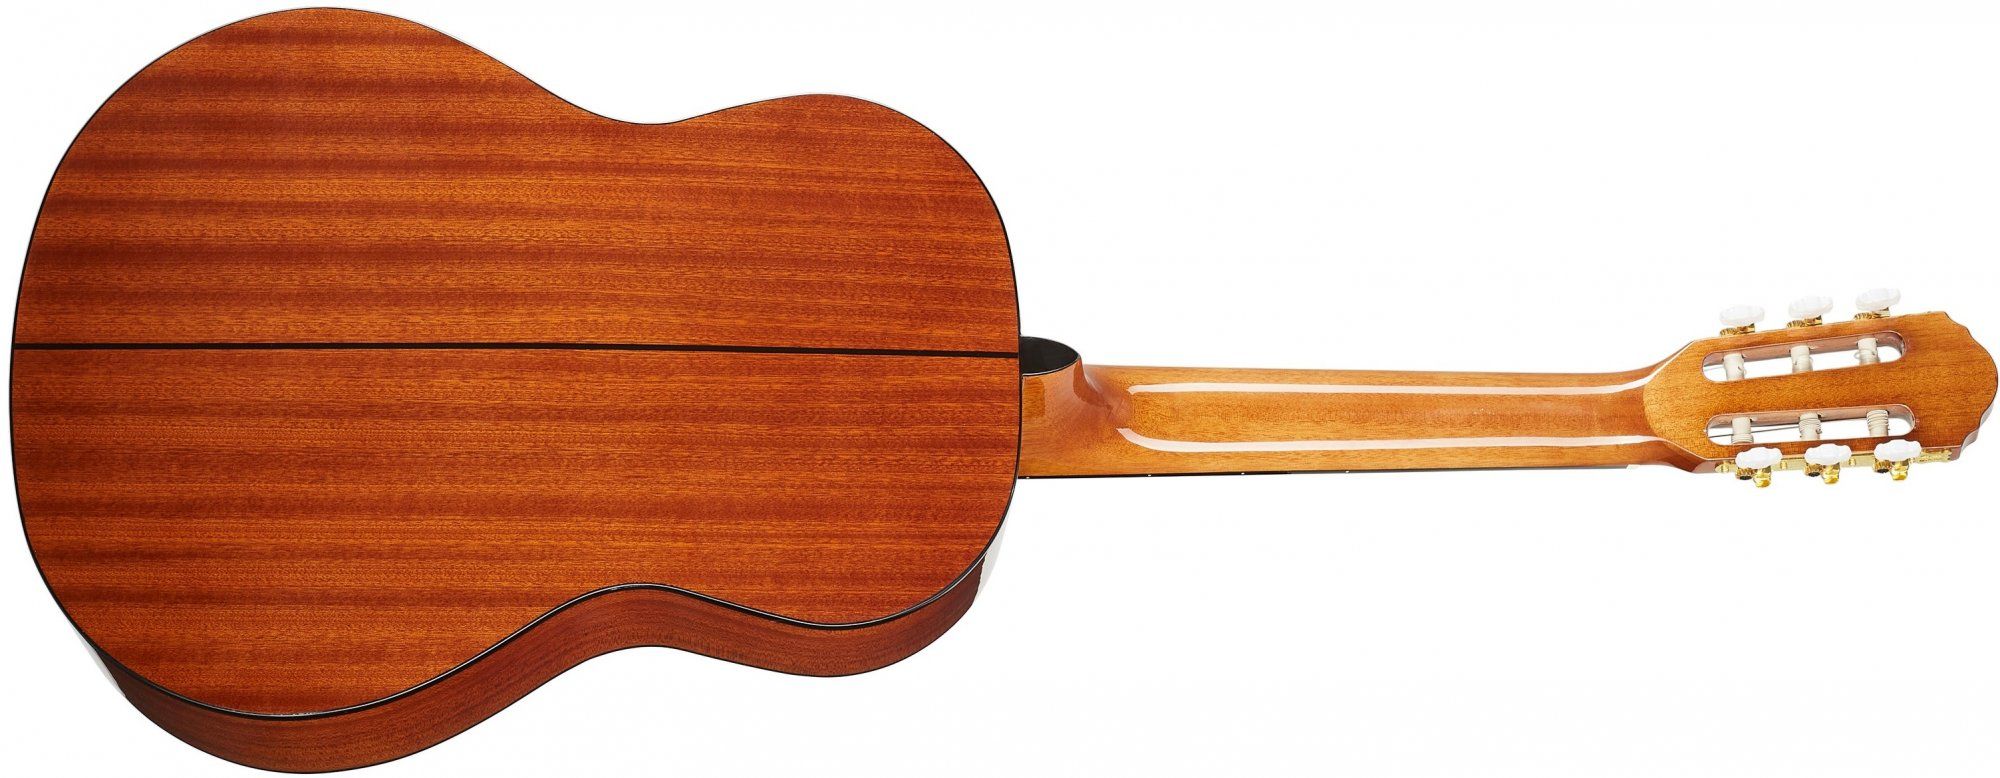  krásná akustická kytara oscar schmidt menzura 648 mm vrstvený korpus lesklá povrchová úprava vhodná pro hru trsátky i prsty 